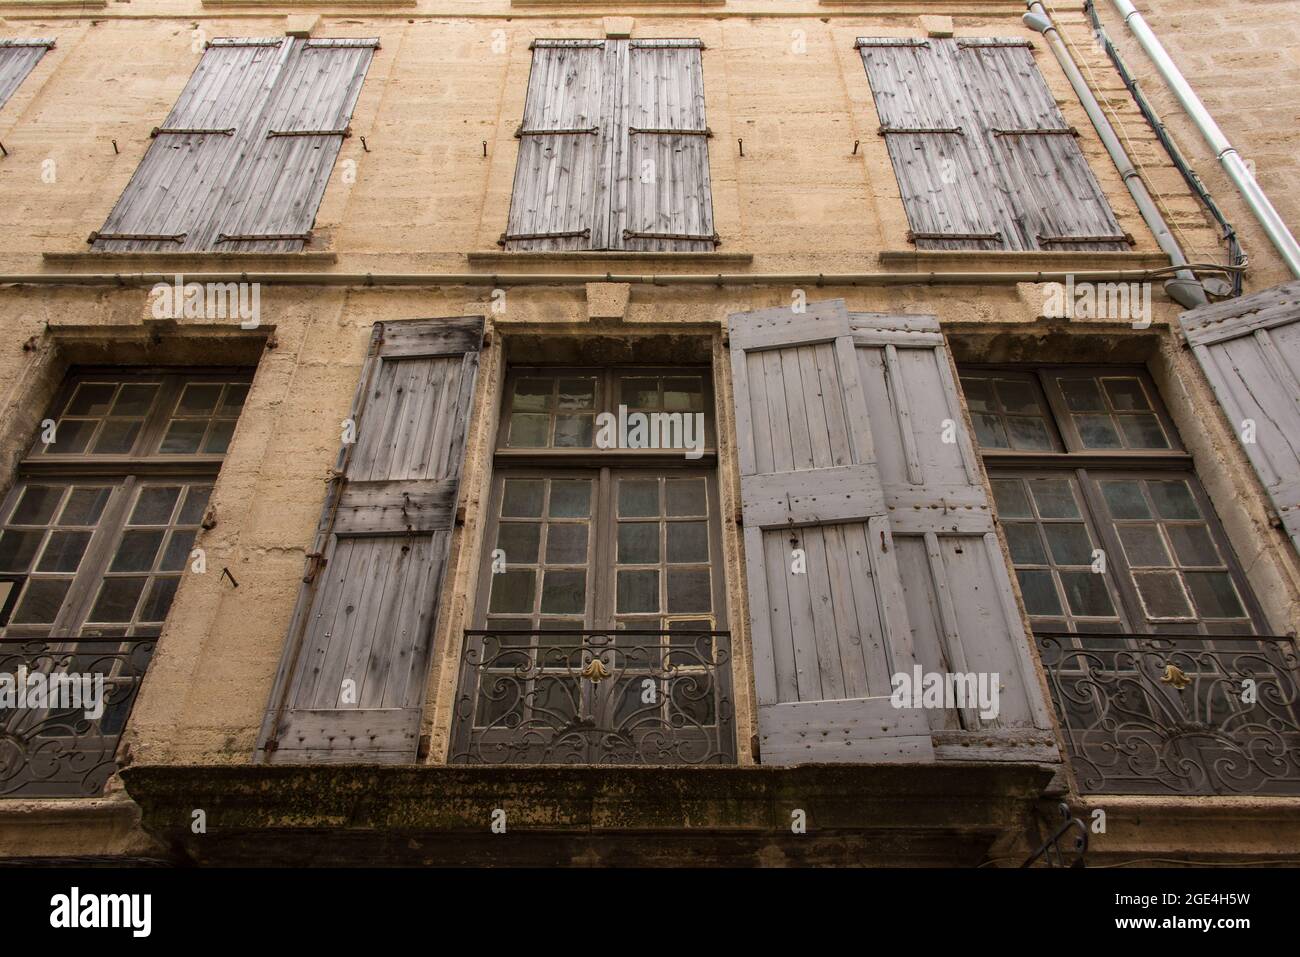 Die Patina der Vergangenheit: Eine Fensterfront in der Altstadt von Pézenas - the patina of history. A facade in the historic city centre of Pézenas. Stock Photo